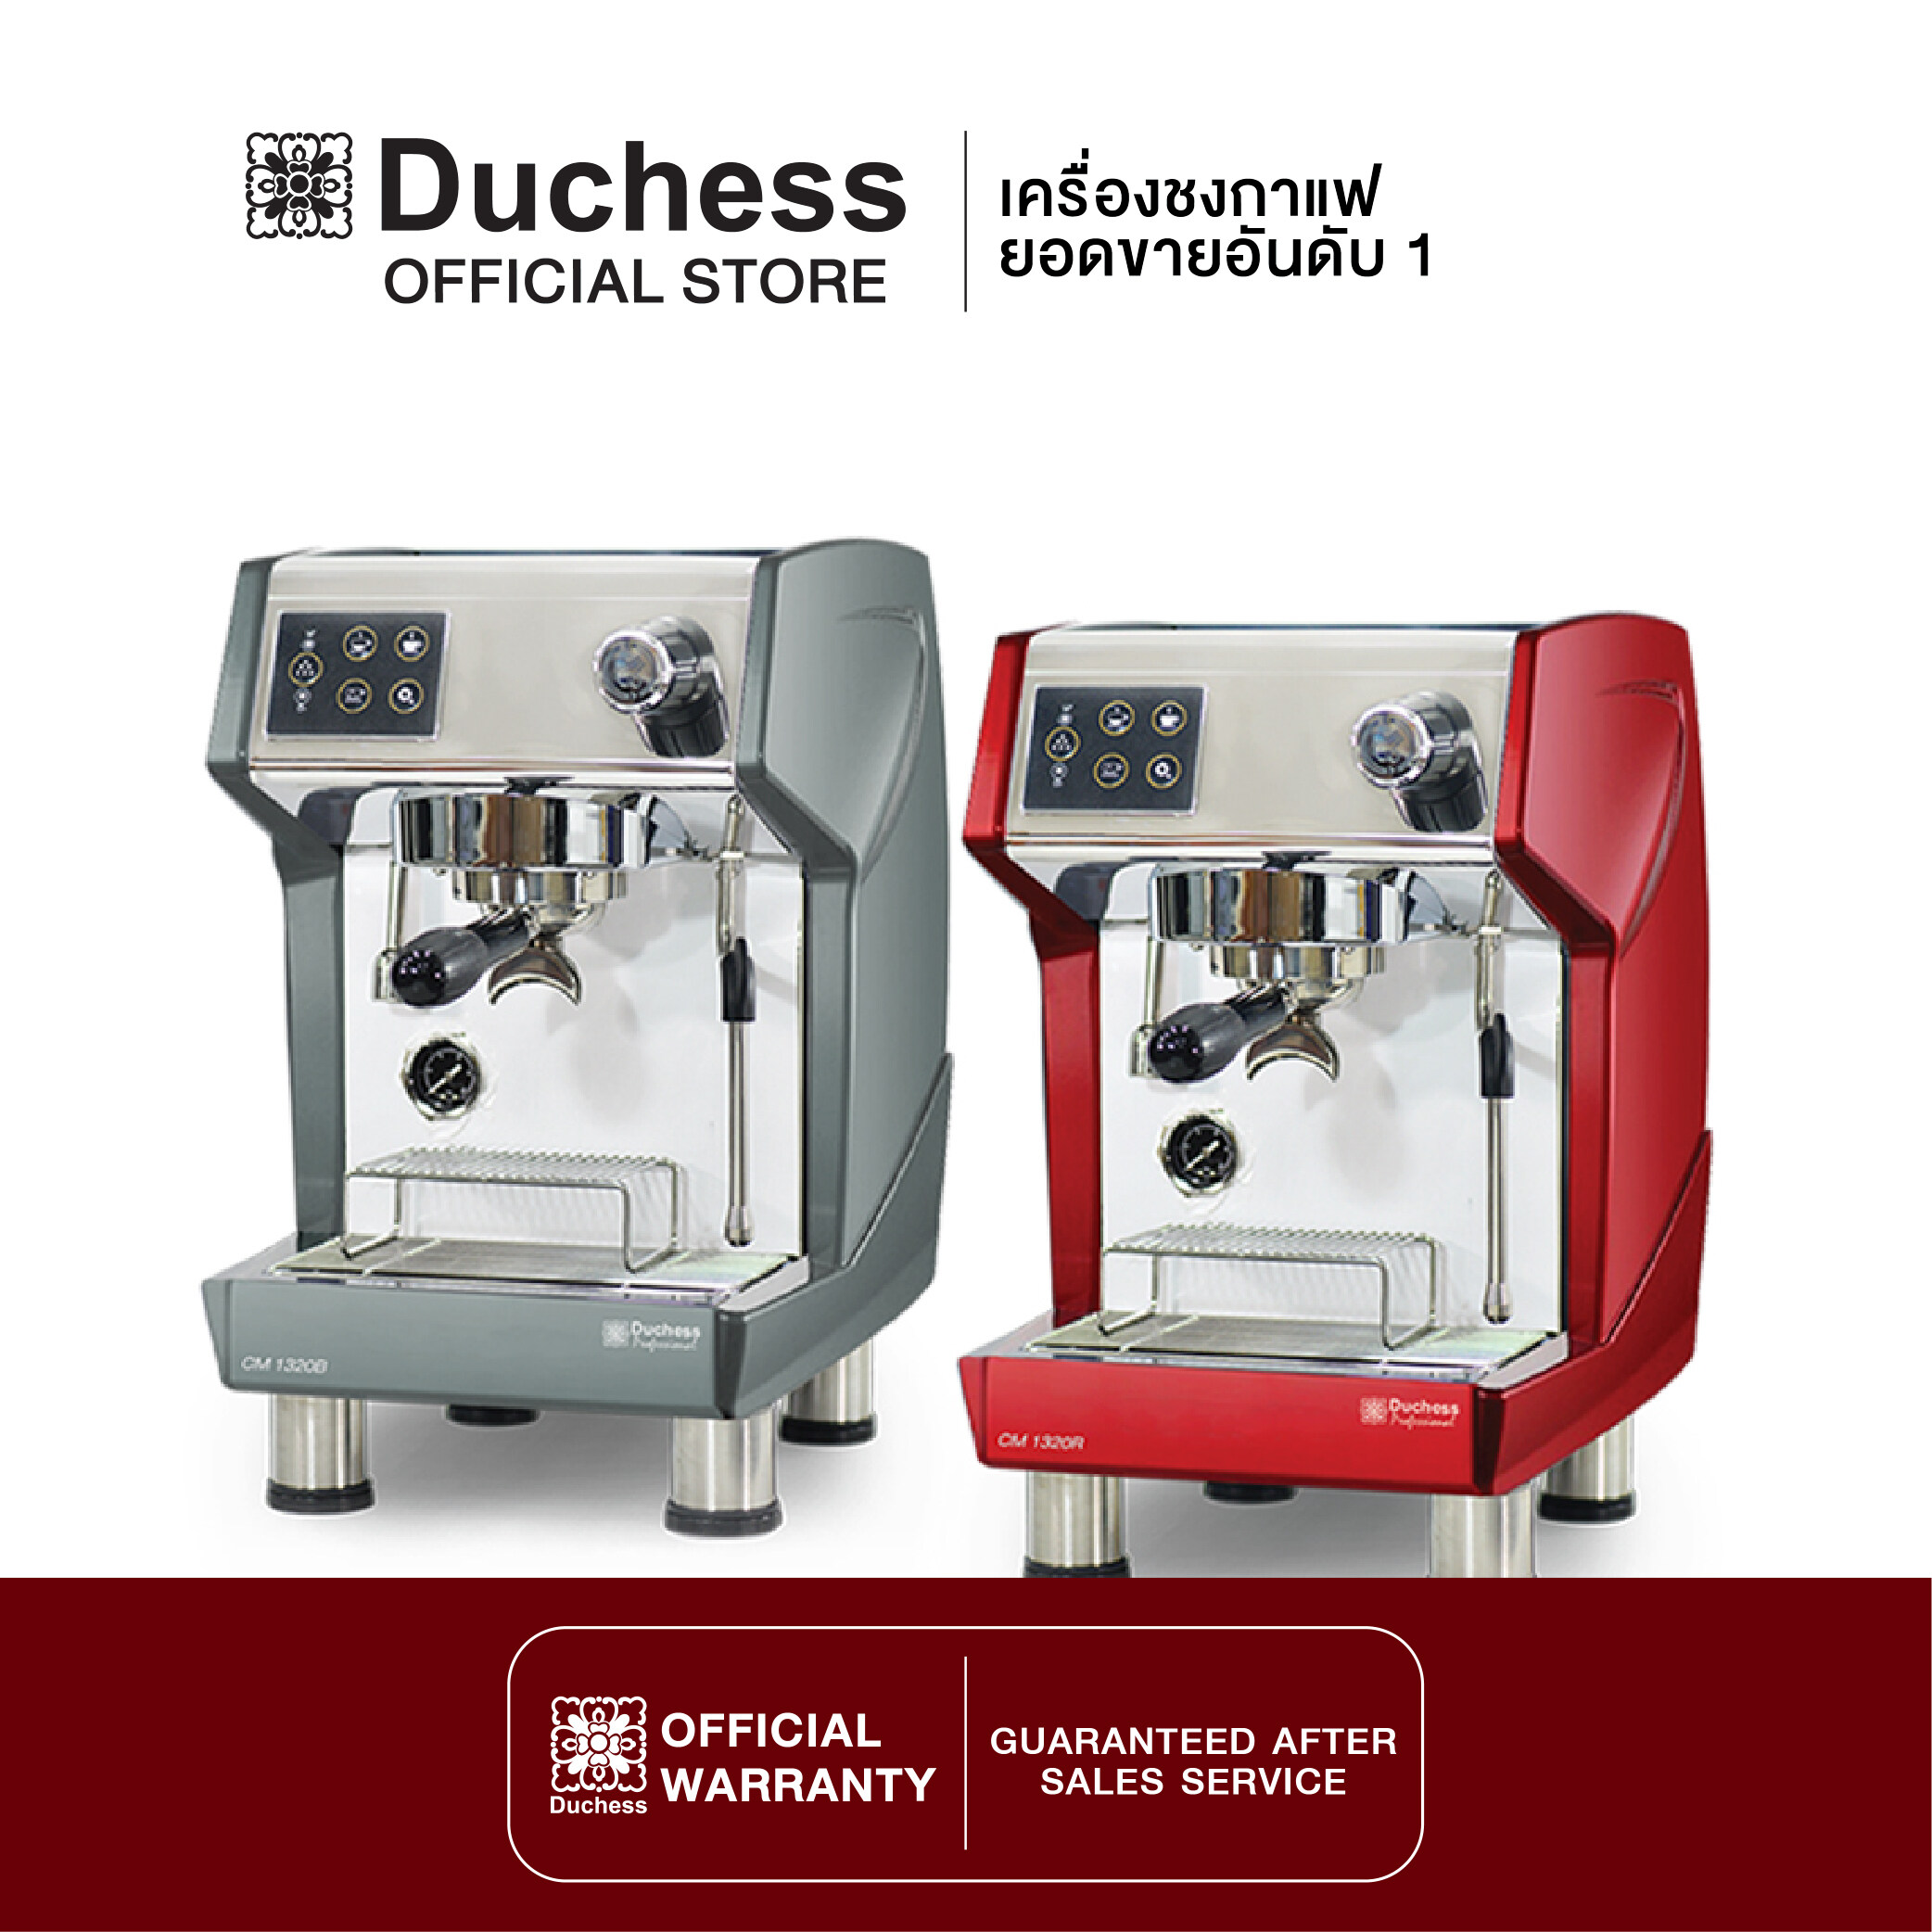 Duchess CM1320 - เครื่องชงกาแฟสด มี 2สี ให้เลือก (สีดำ/สีแดง)  แถมฟรี!! ก้านชง+ช้อนตักกาแฟ (รับประกันเครื่อง 1 ปี)